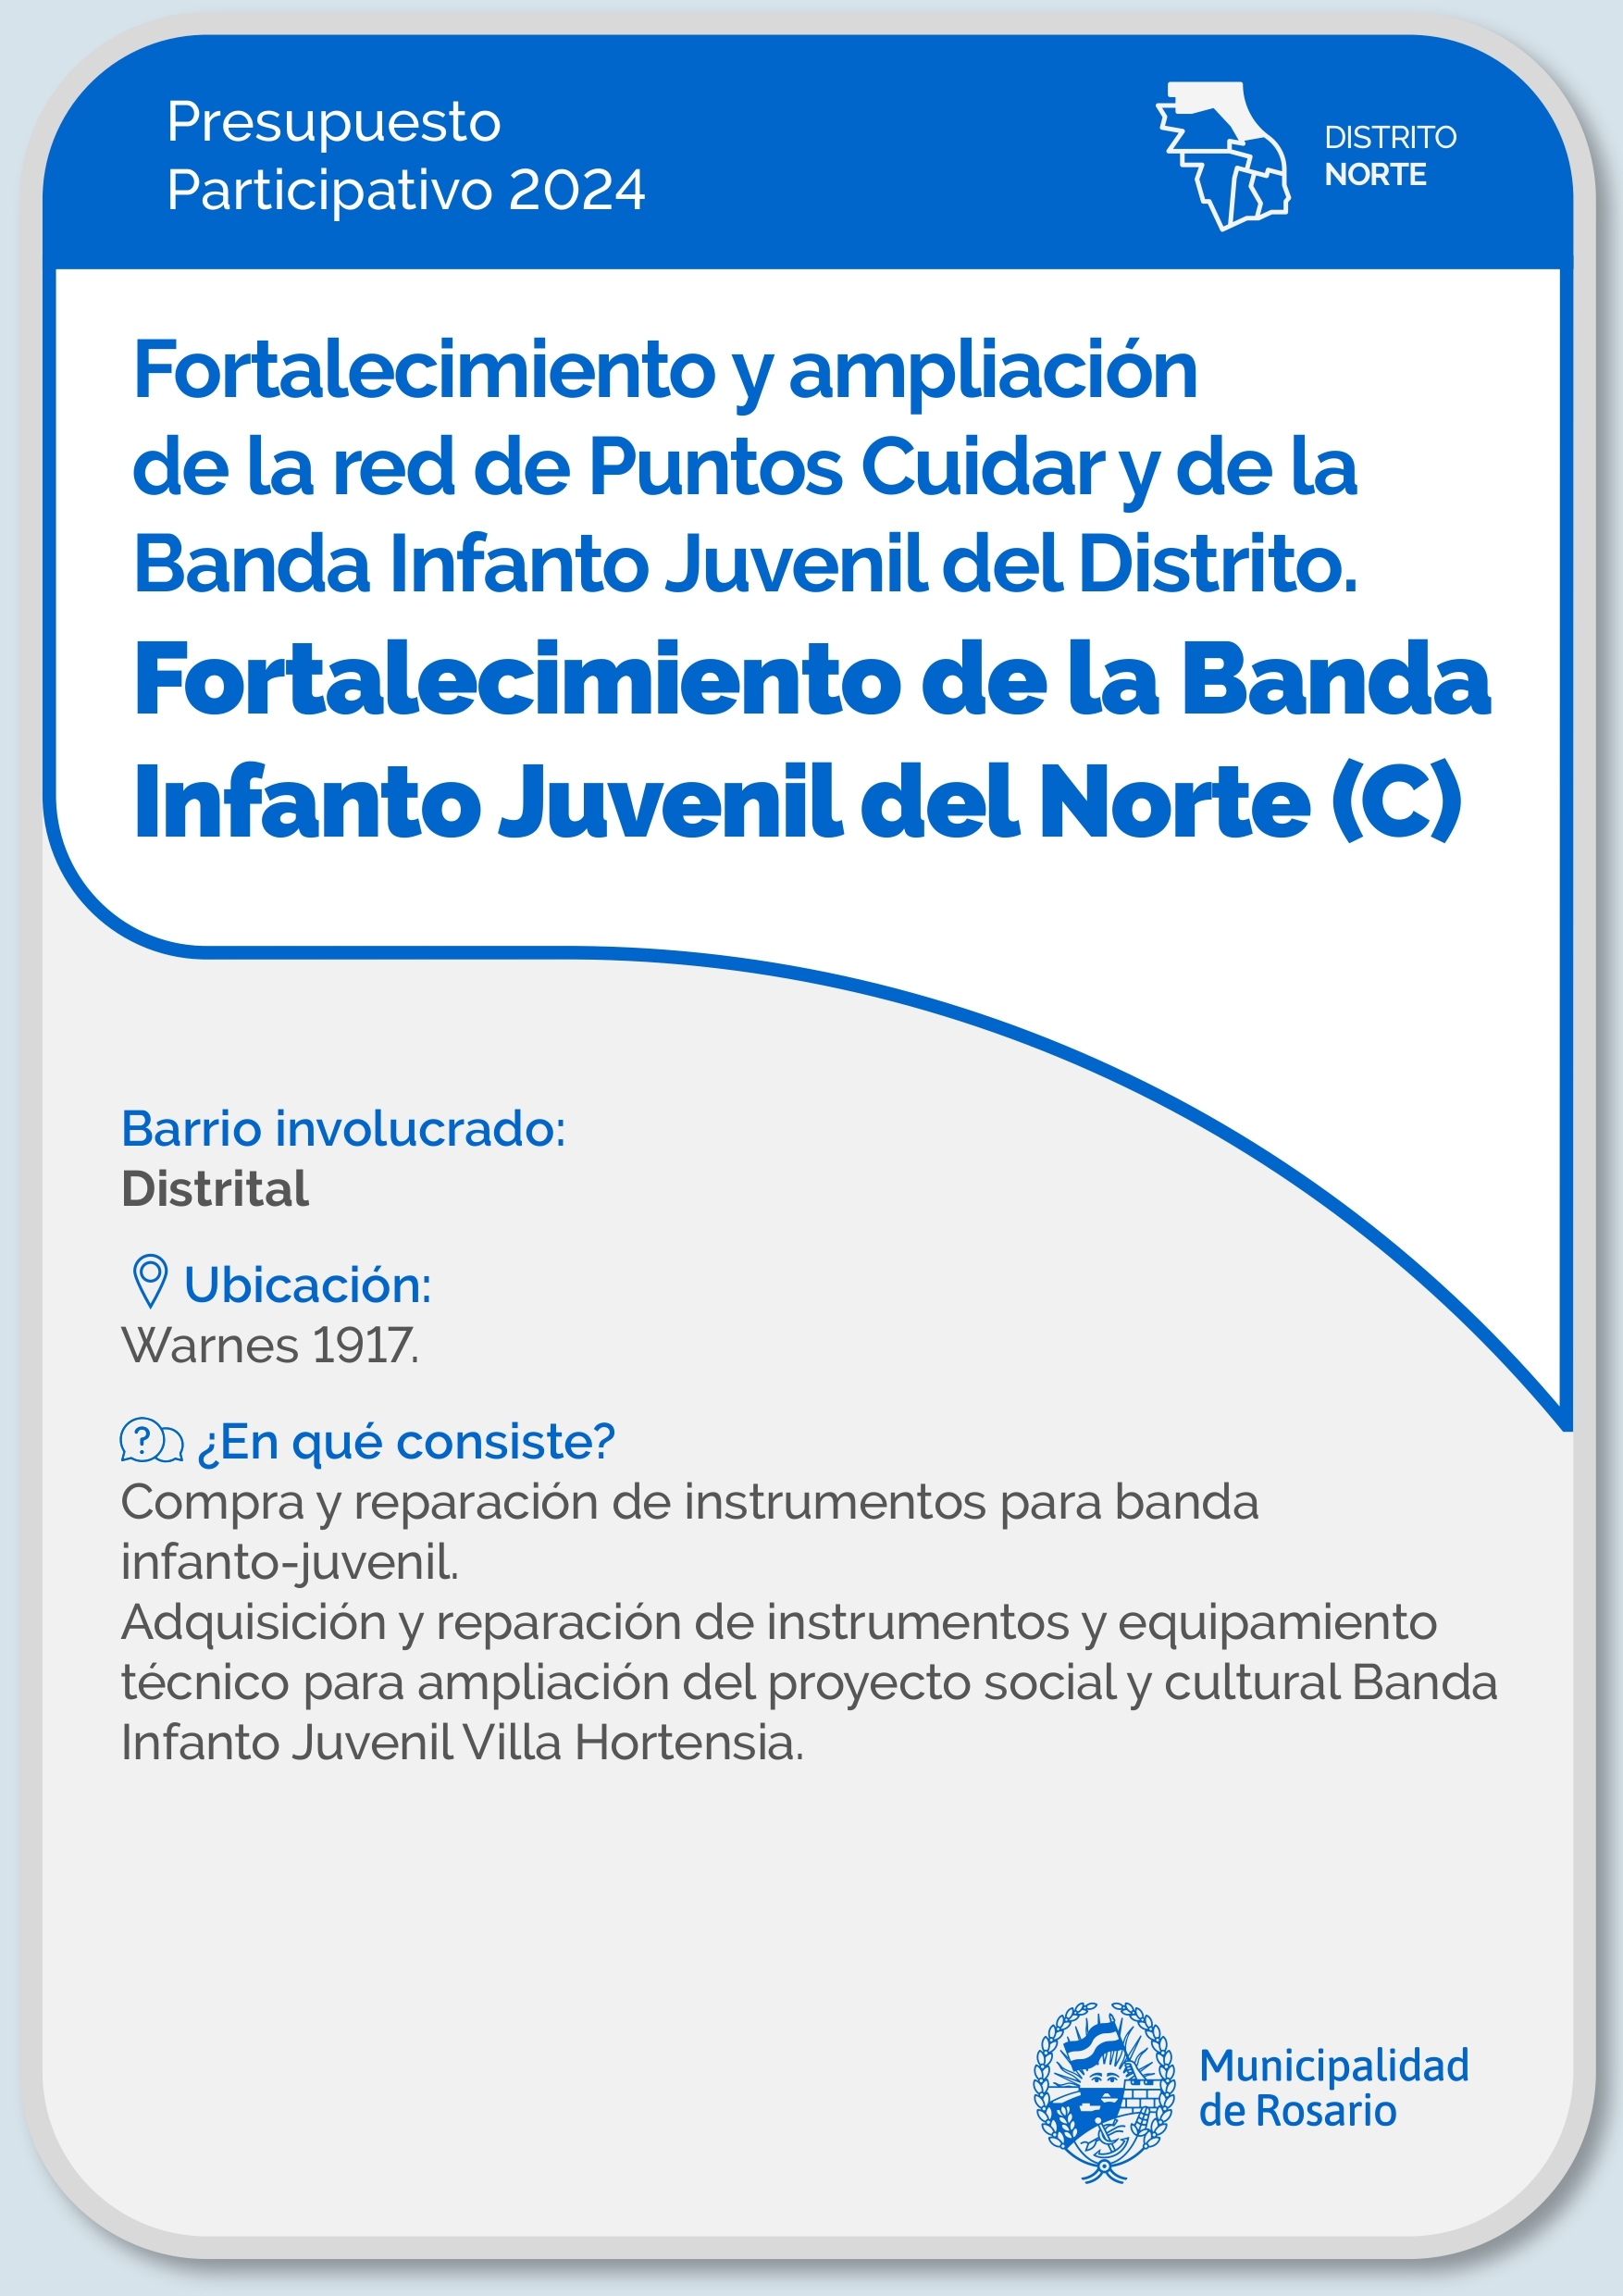 Fortalecimiento y ampliación de la red de Puntos Cuidar y de la Banda Infanto Juvenil. Fortalecimiento de la Banda Infanto Juvenil - Distrito Norte